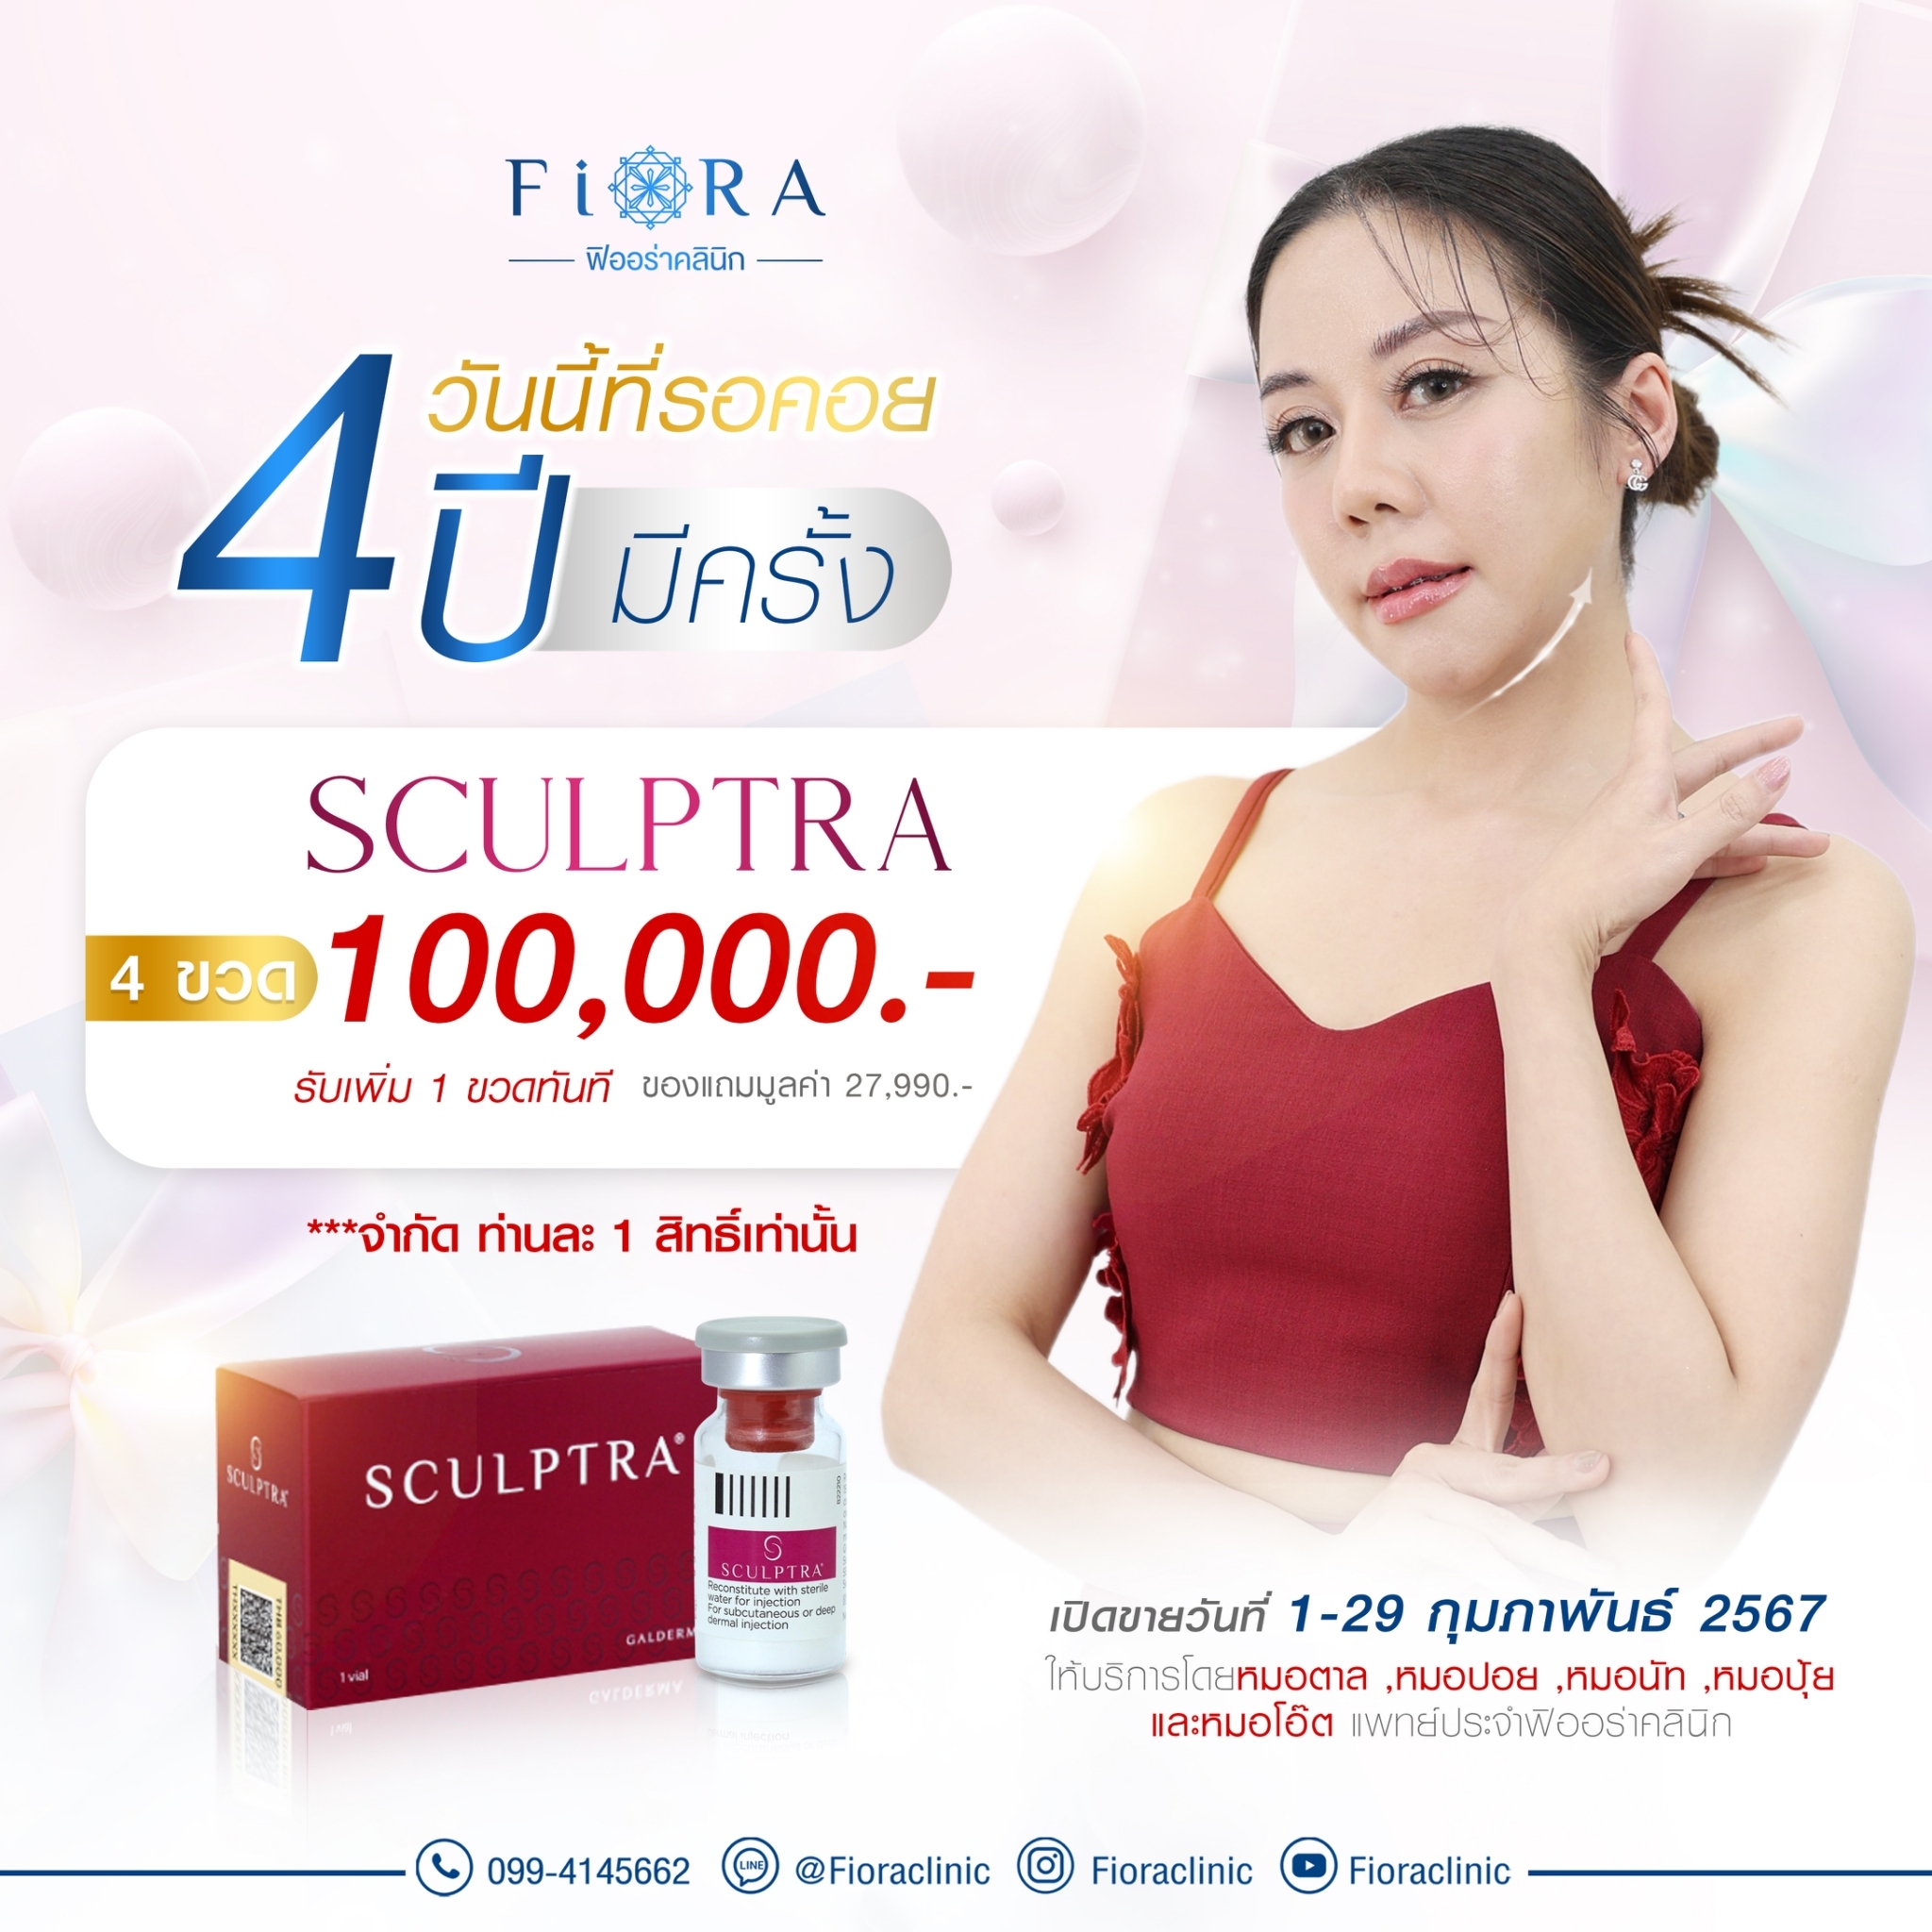 ดีลดี 4 ปีมีครั้ง กับราคาสุดพิเศษ เมื่อซื้อ Sculptra 4 ขวด 100,000 บาท แถมฟรี Sculptra 1 ขวด มูลค่า 27,990 บาท ที่ฟิออร่าคลินิก